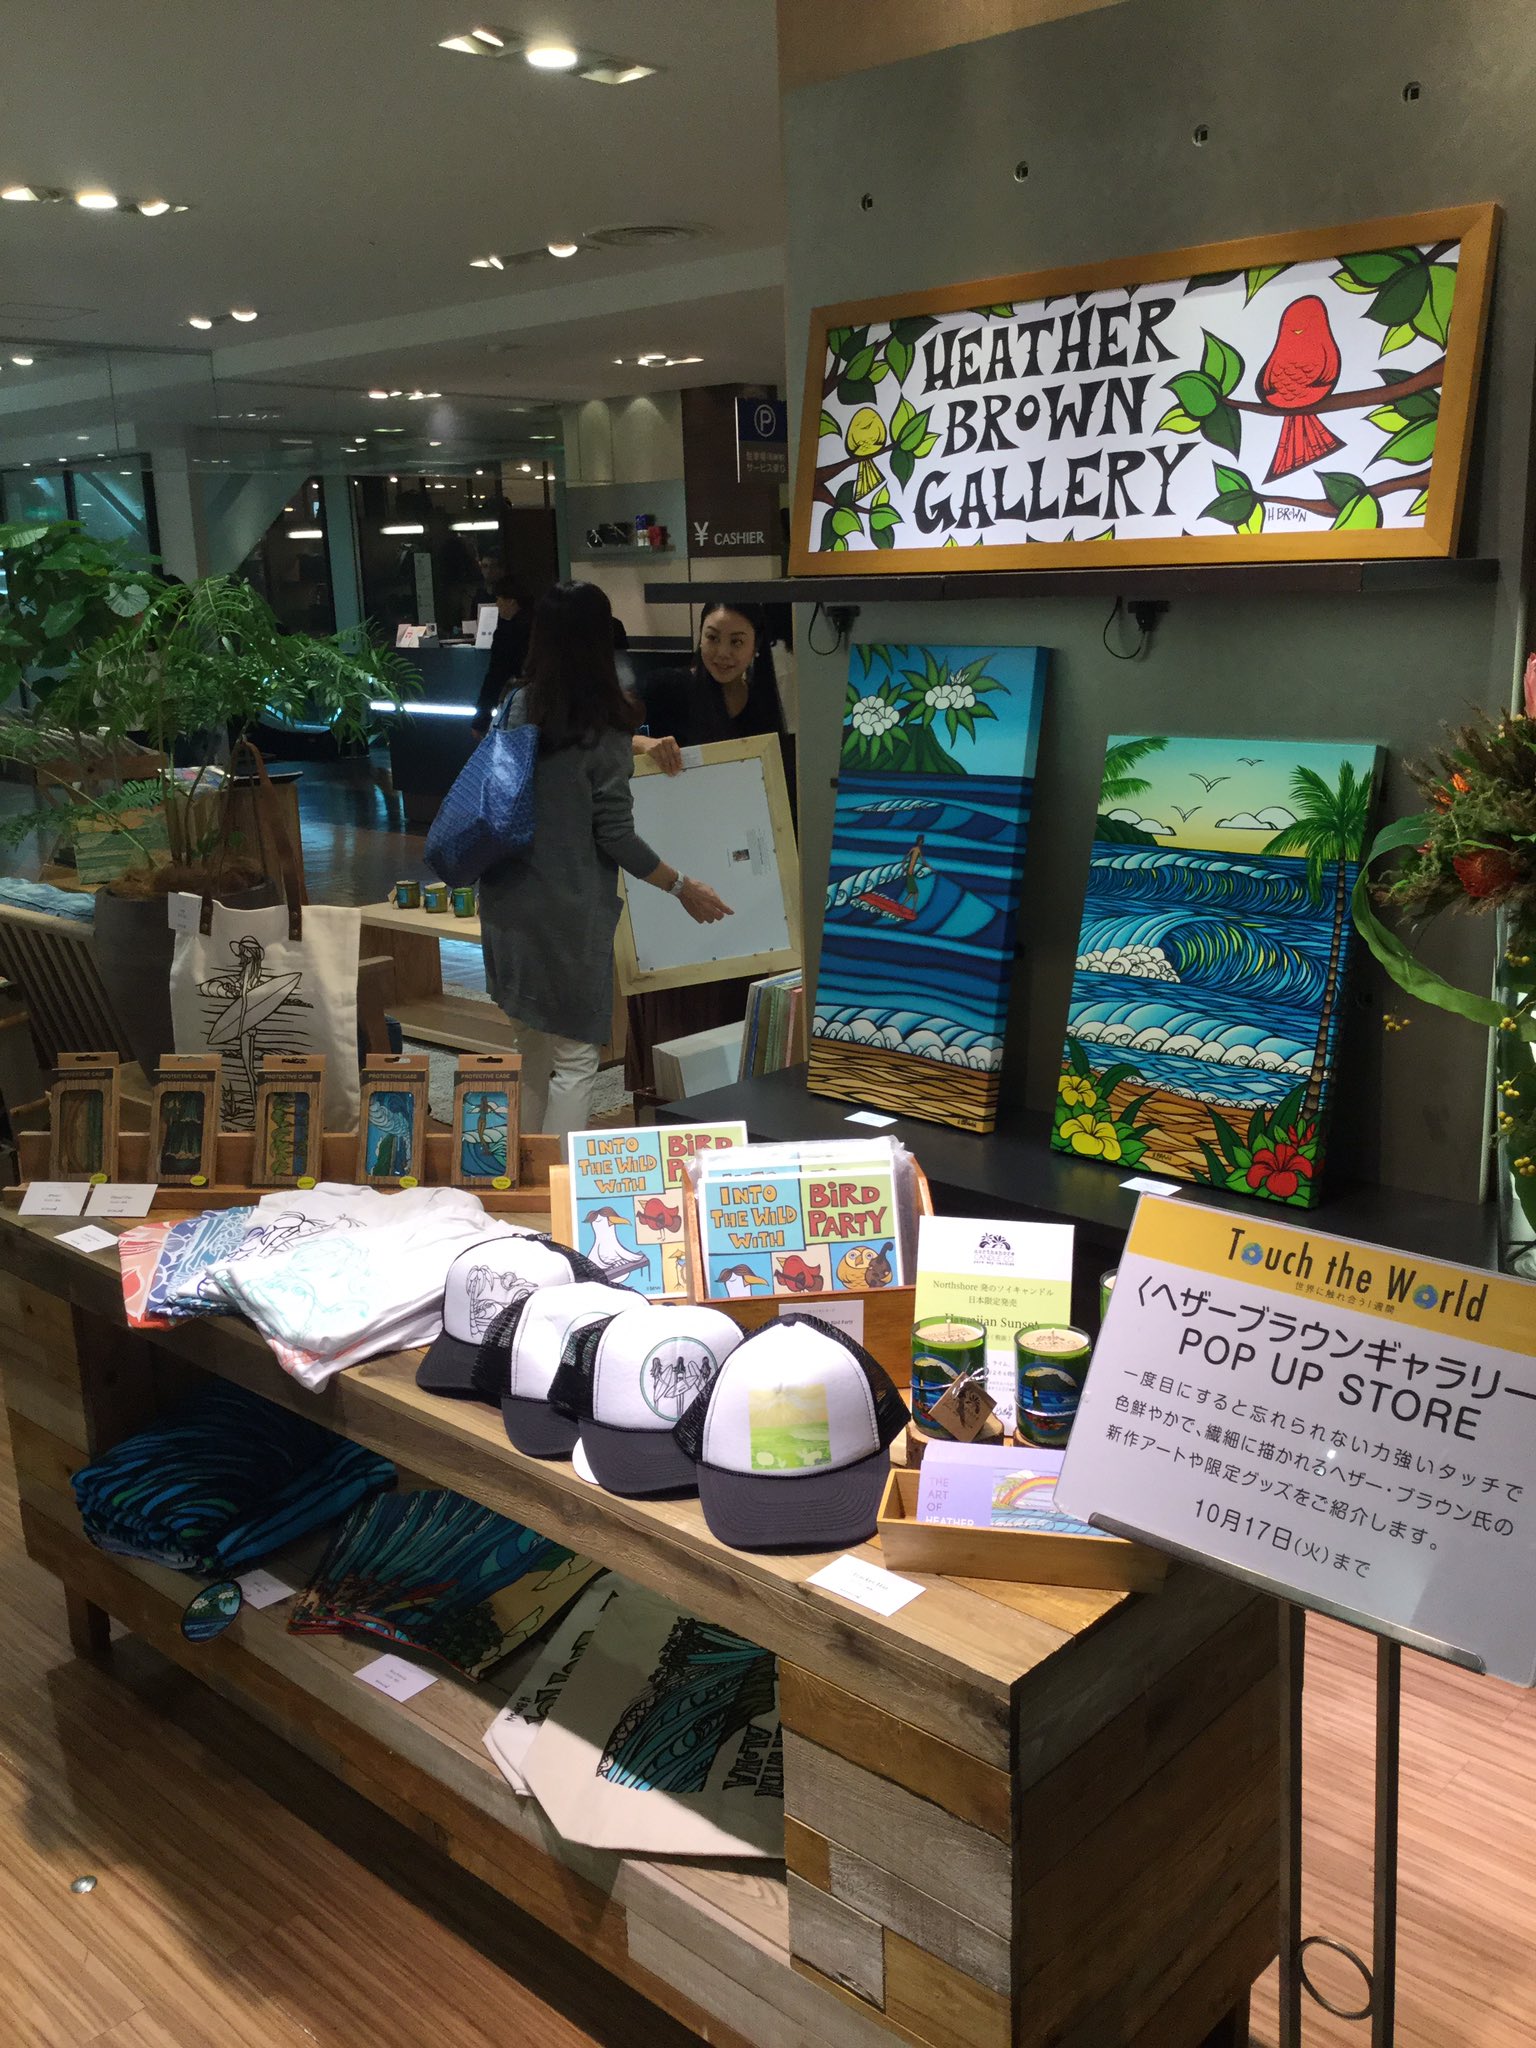 吉沢 純人 On Twitter 京都駅に到着して最初の展示品 ヘザーブラウン